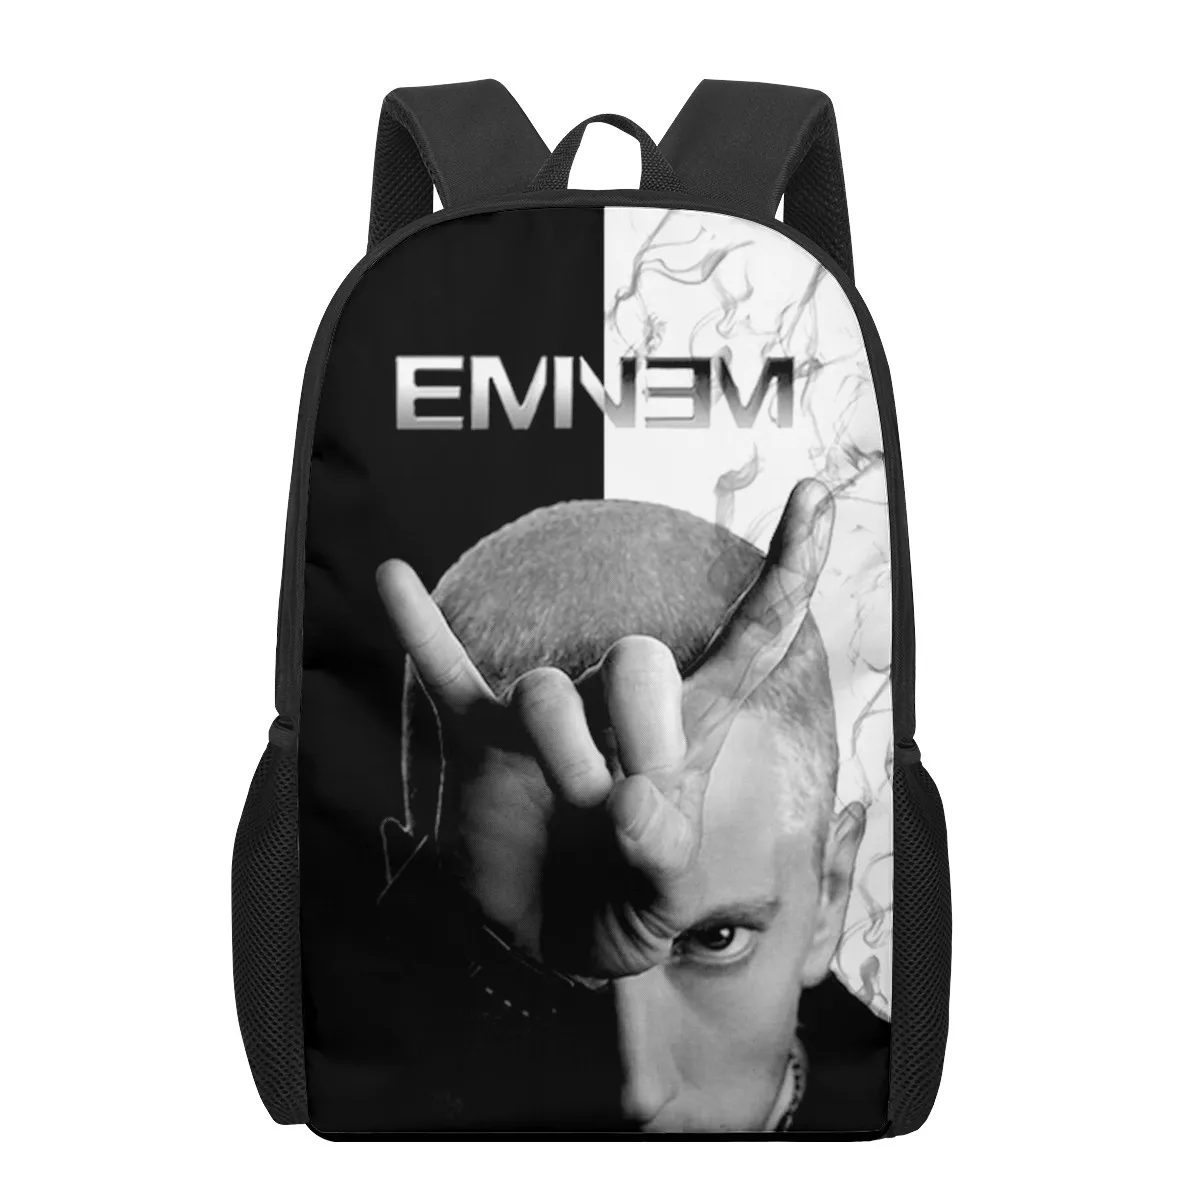 Eminem 3D Print School Backpack for Boys Girls Teenager Kids Book Bag Casual Shoulder Bags 16Inch Satchel Mochila